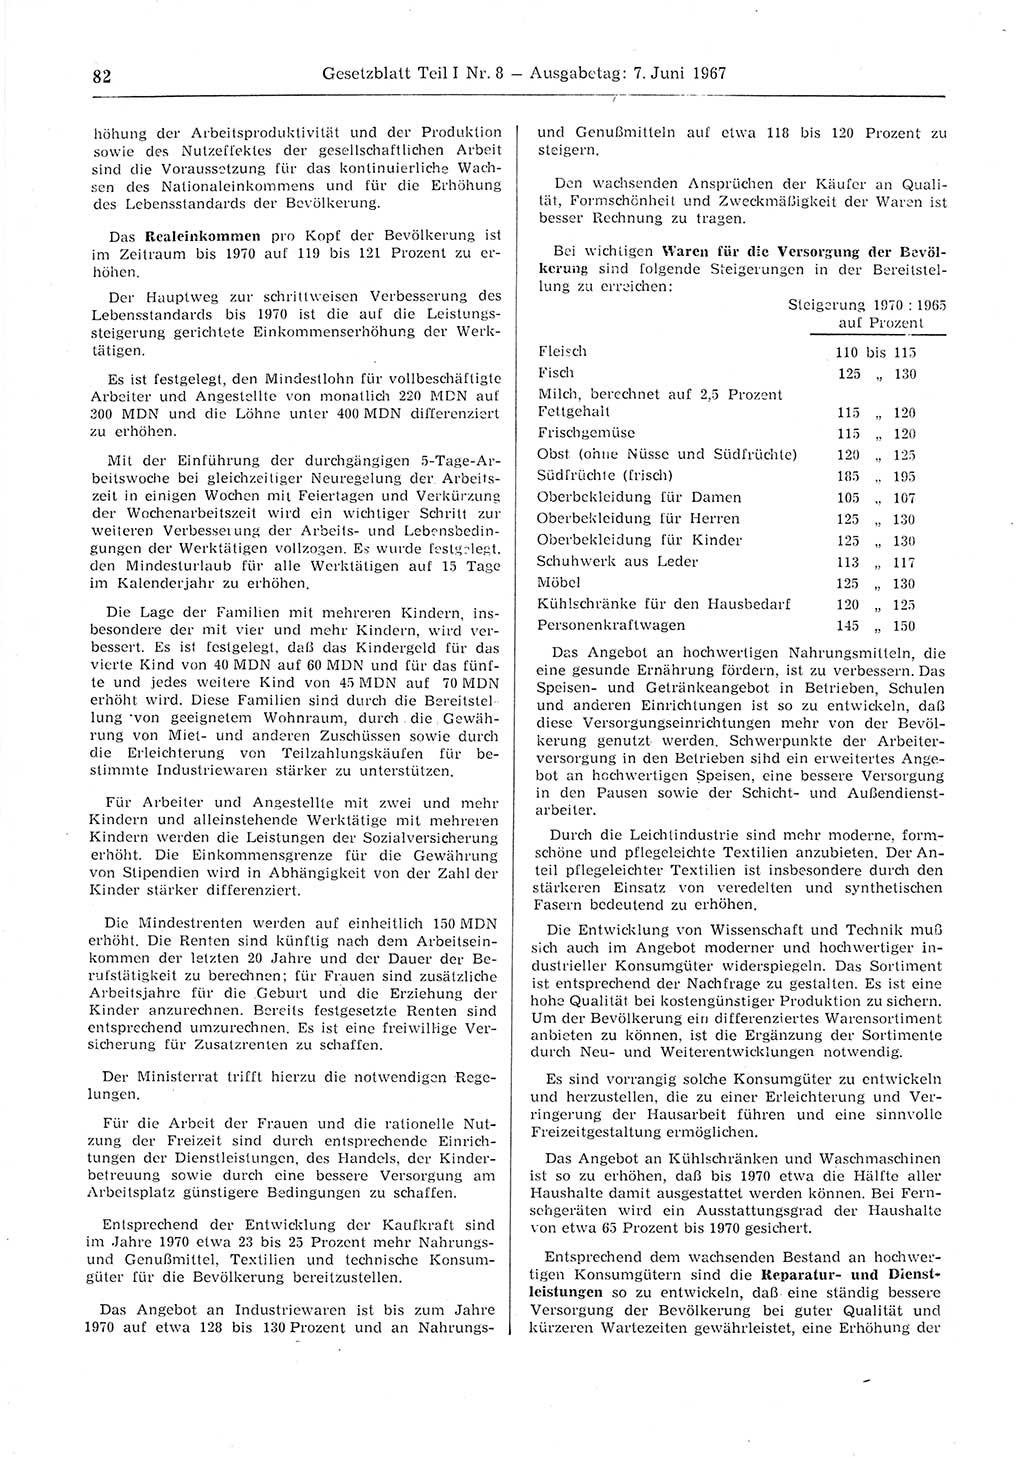 Gesetzblatt (GBl.) der Deutschen Demokratischen Republik (DDR) Teil Ⅰ 1967, Seite 82 (GBl. DDR Ⅰ 1967, S. 82)